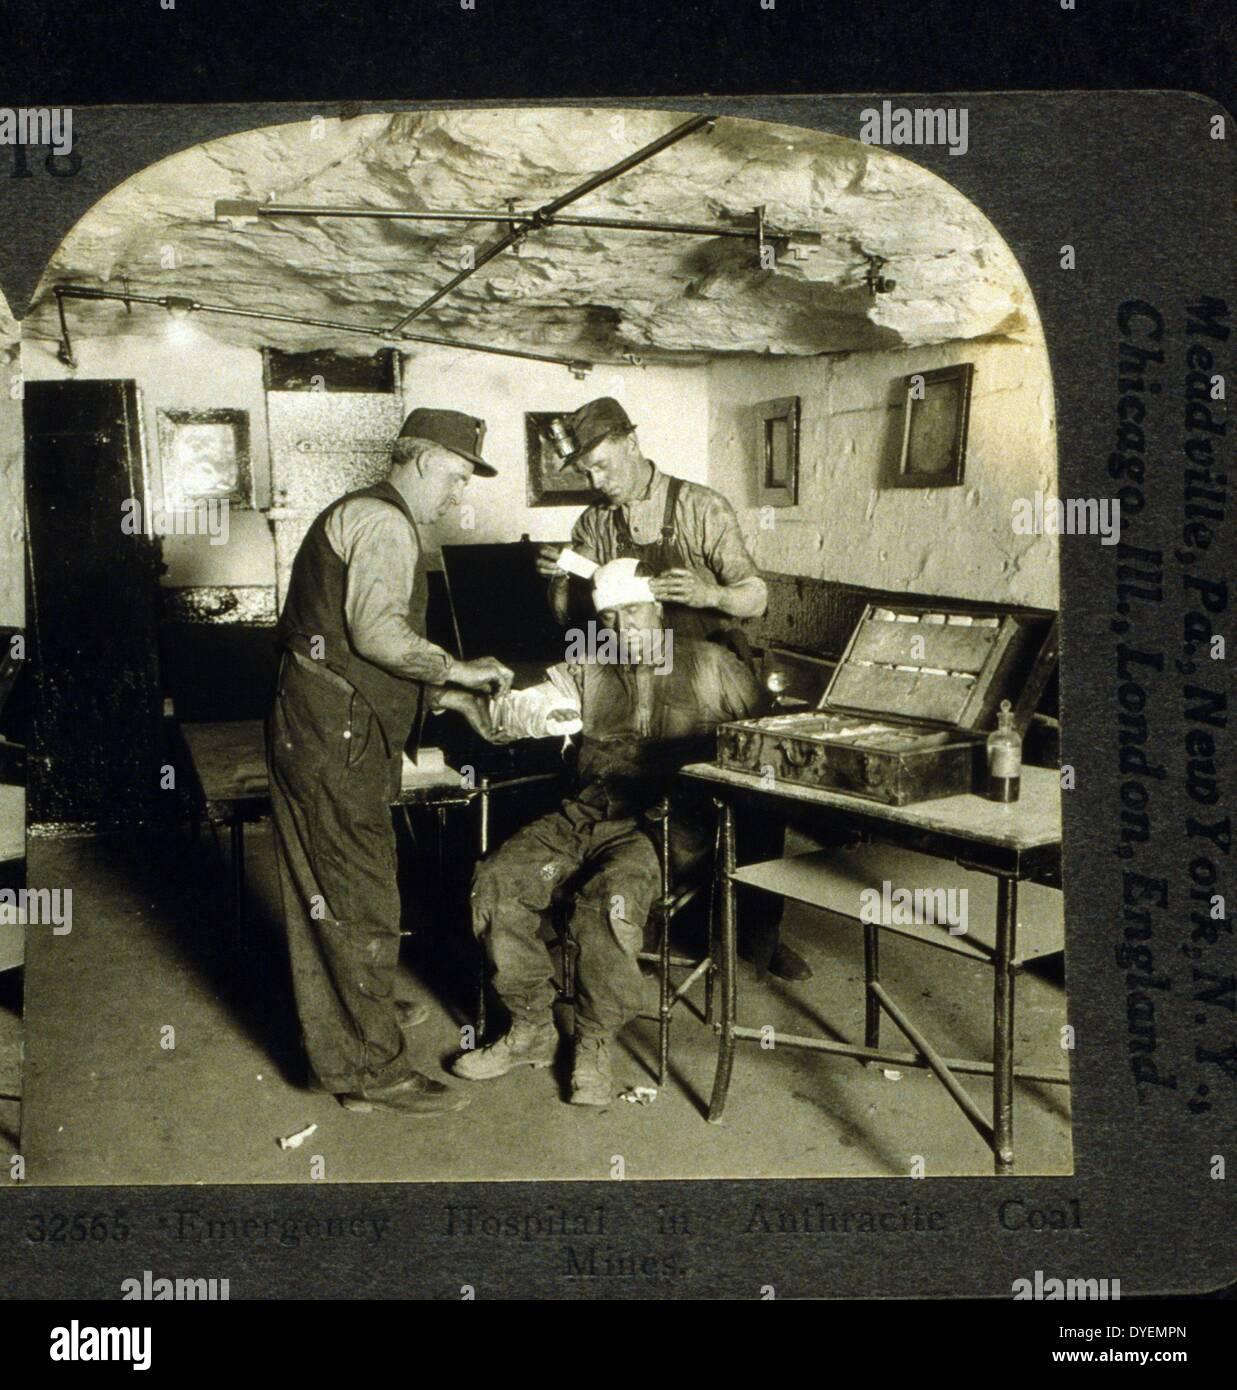 L'hôpital d'urgence dans les mines de charbon anthracite (entre 1900 et 1920), la photographie imprimer sur carte stéréo ou stéréophotogramme. Un homme chef de bandages homme blessé tandis qu'un autre Les bandages de son bras. Banque D'Images